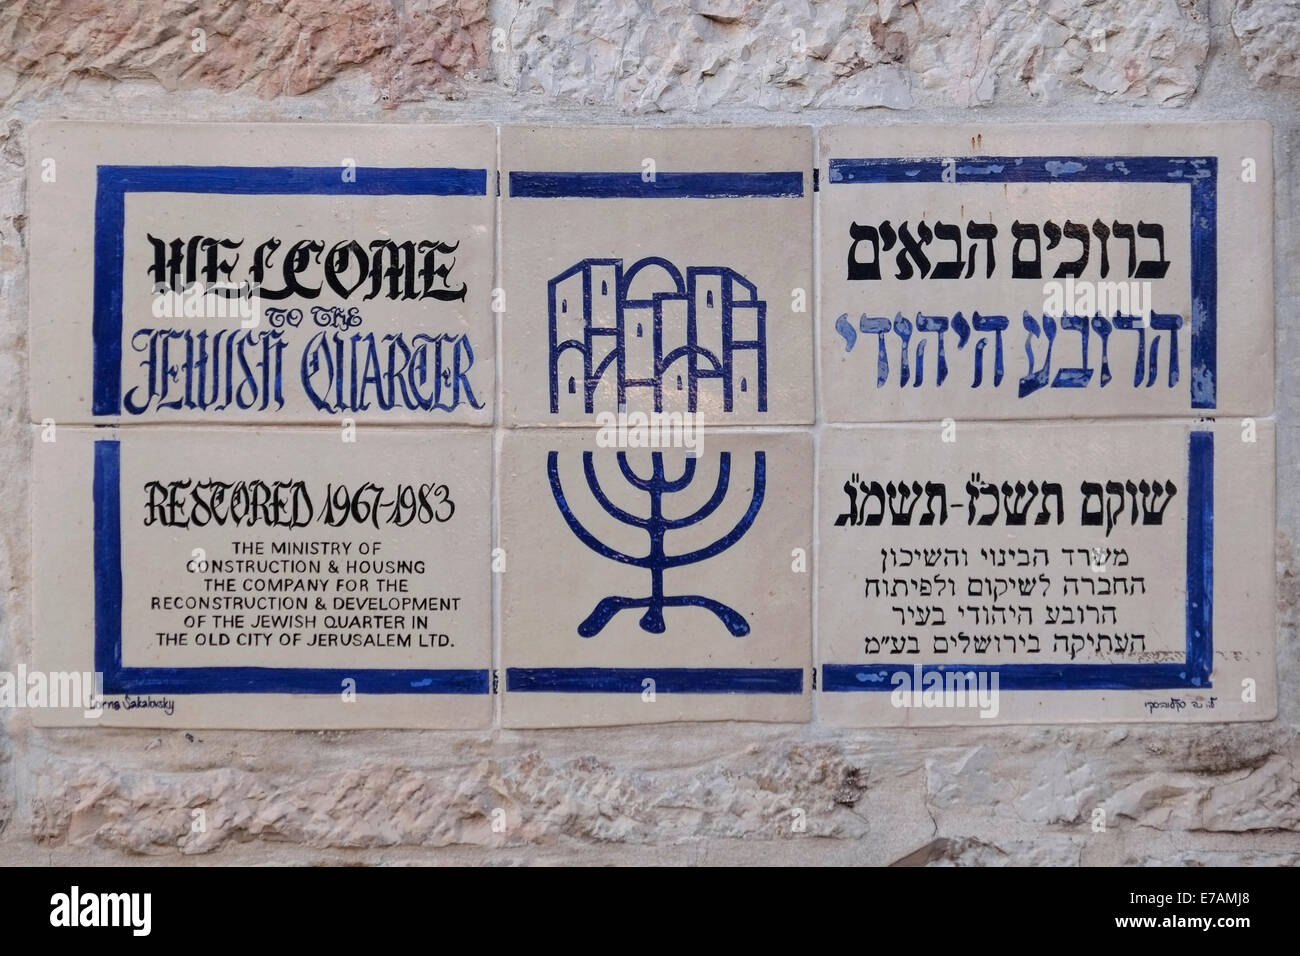 Inscrivez-vous sur des carreaux de céramique en anglais et hébreu à l'ancien quartier juif de Jérusalem est ville Israël Banque D'Images